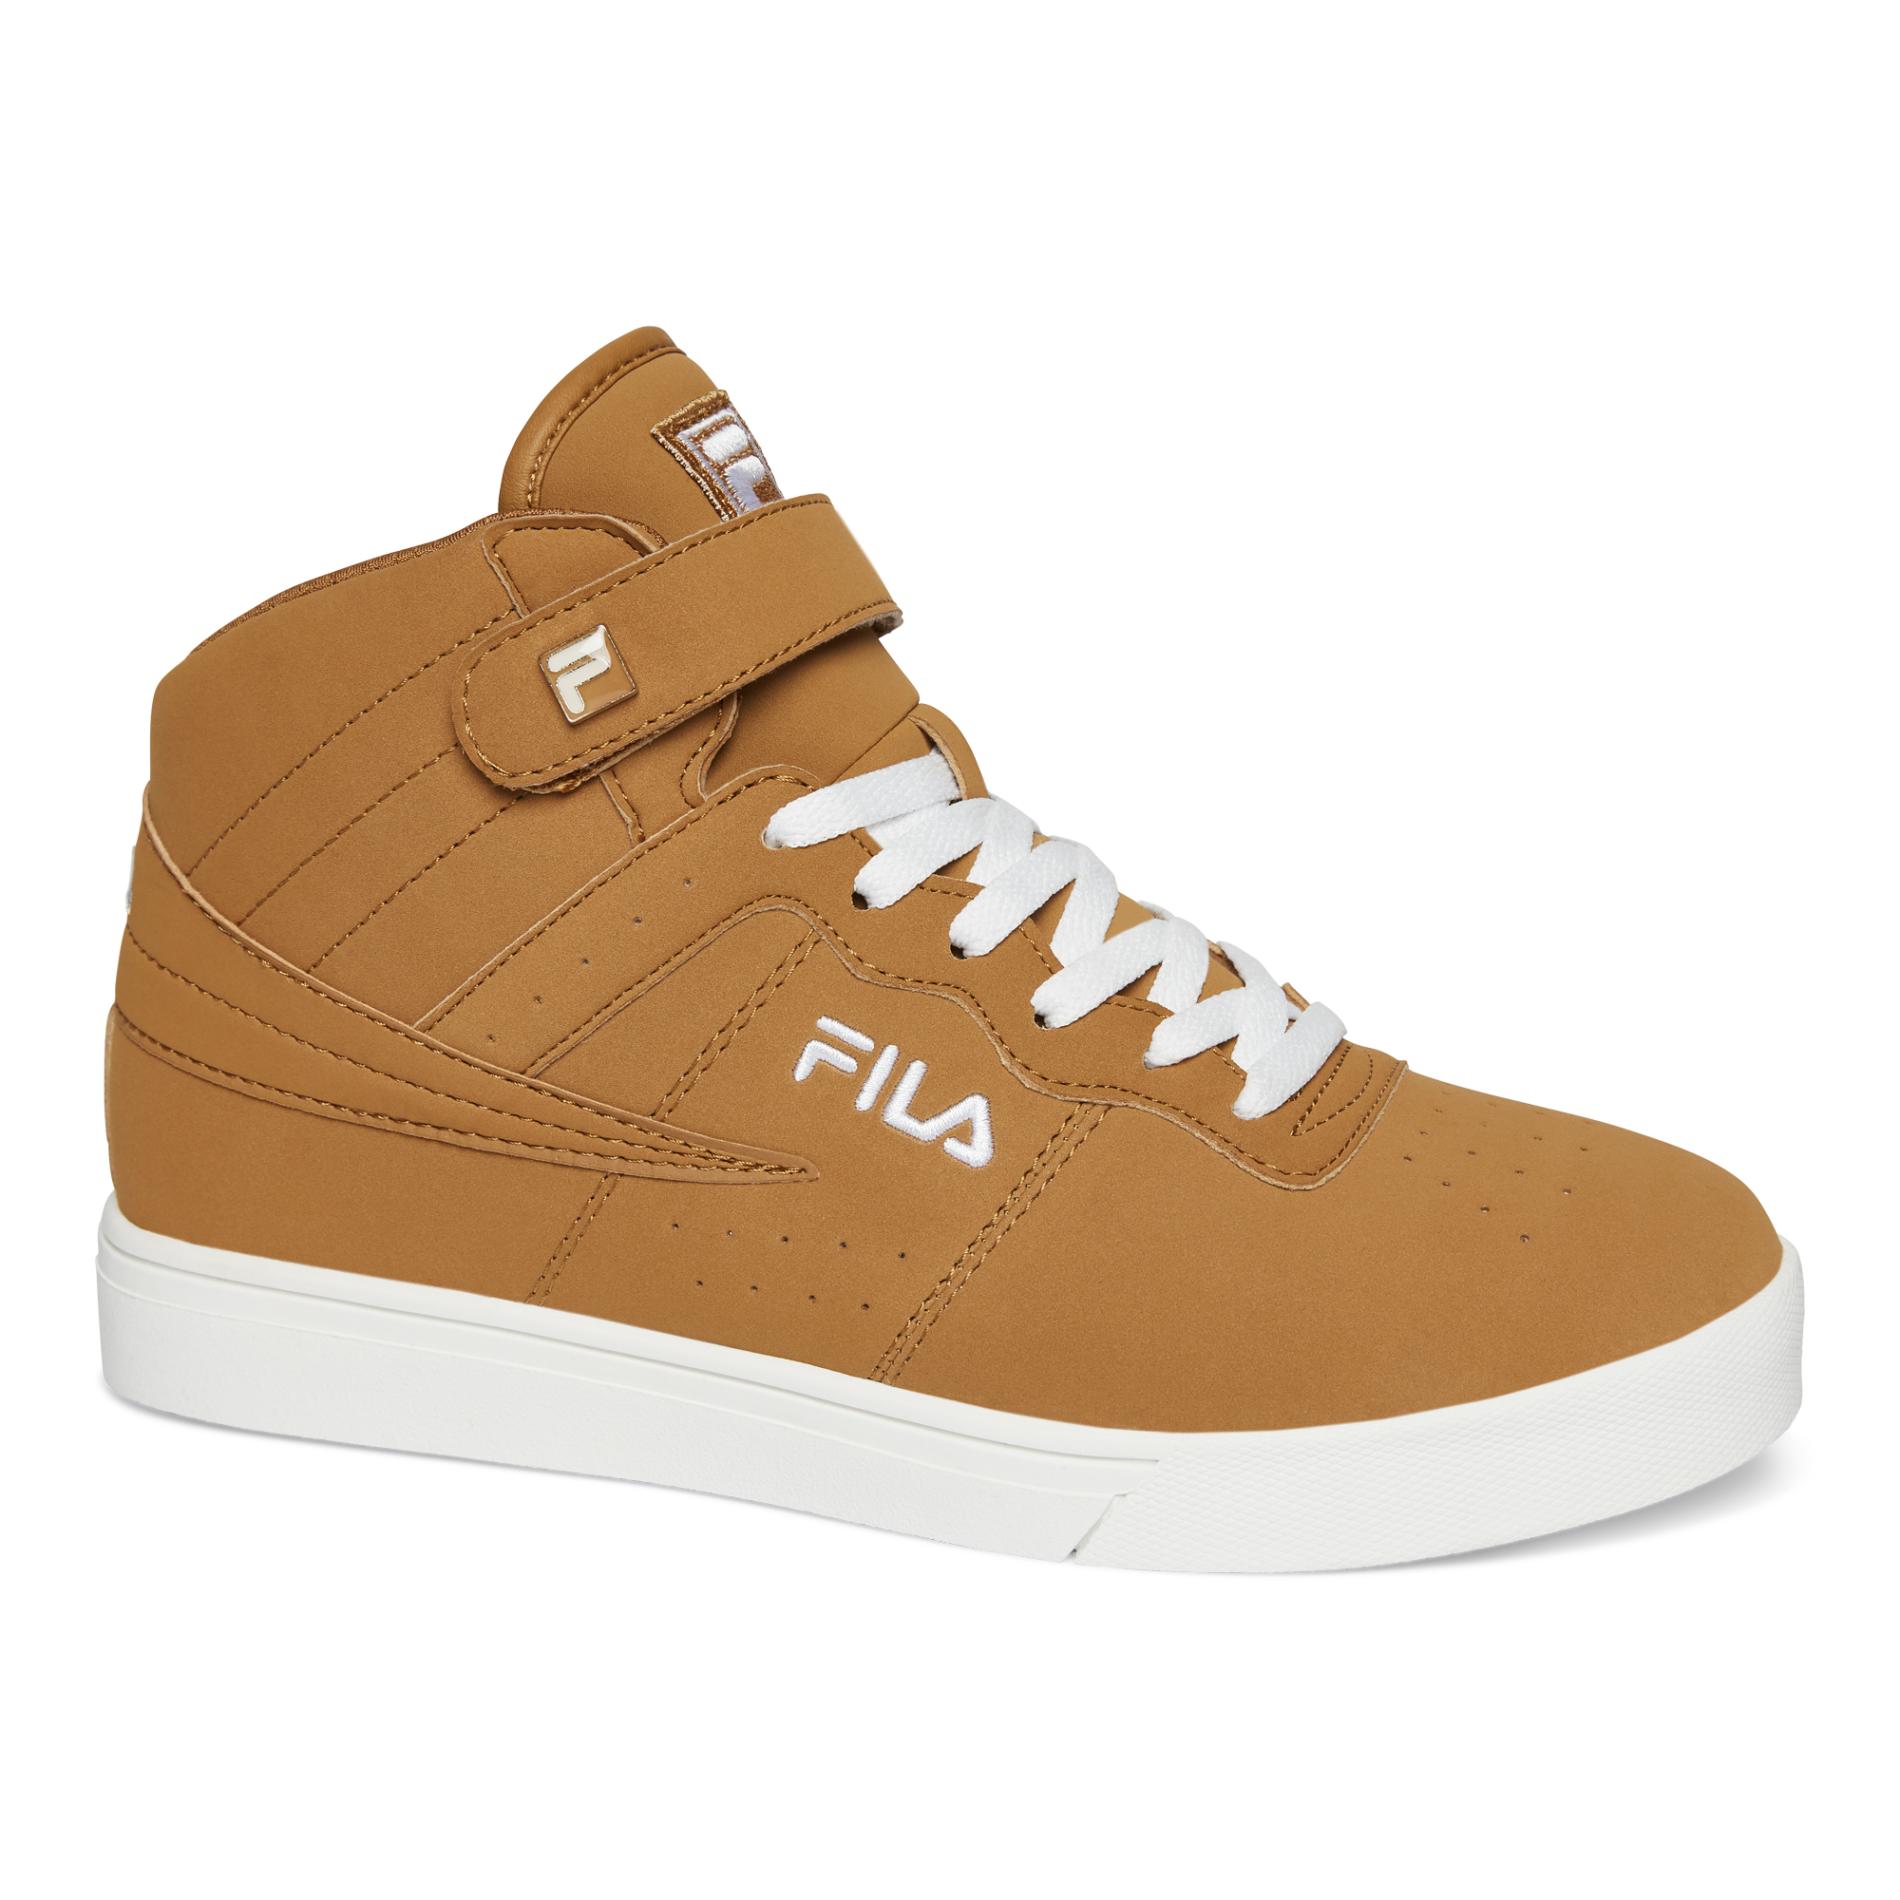 Fila Men's Vulc 13 Mid-Top Sneaker - Tan/White